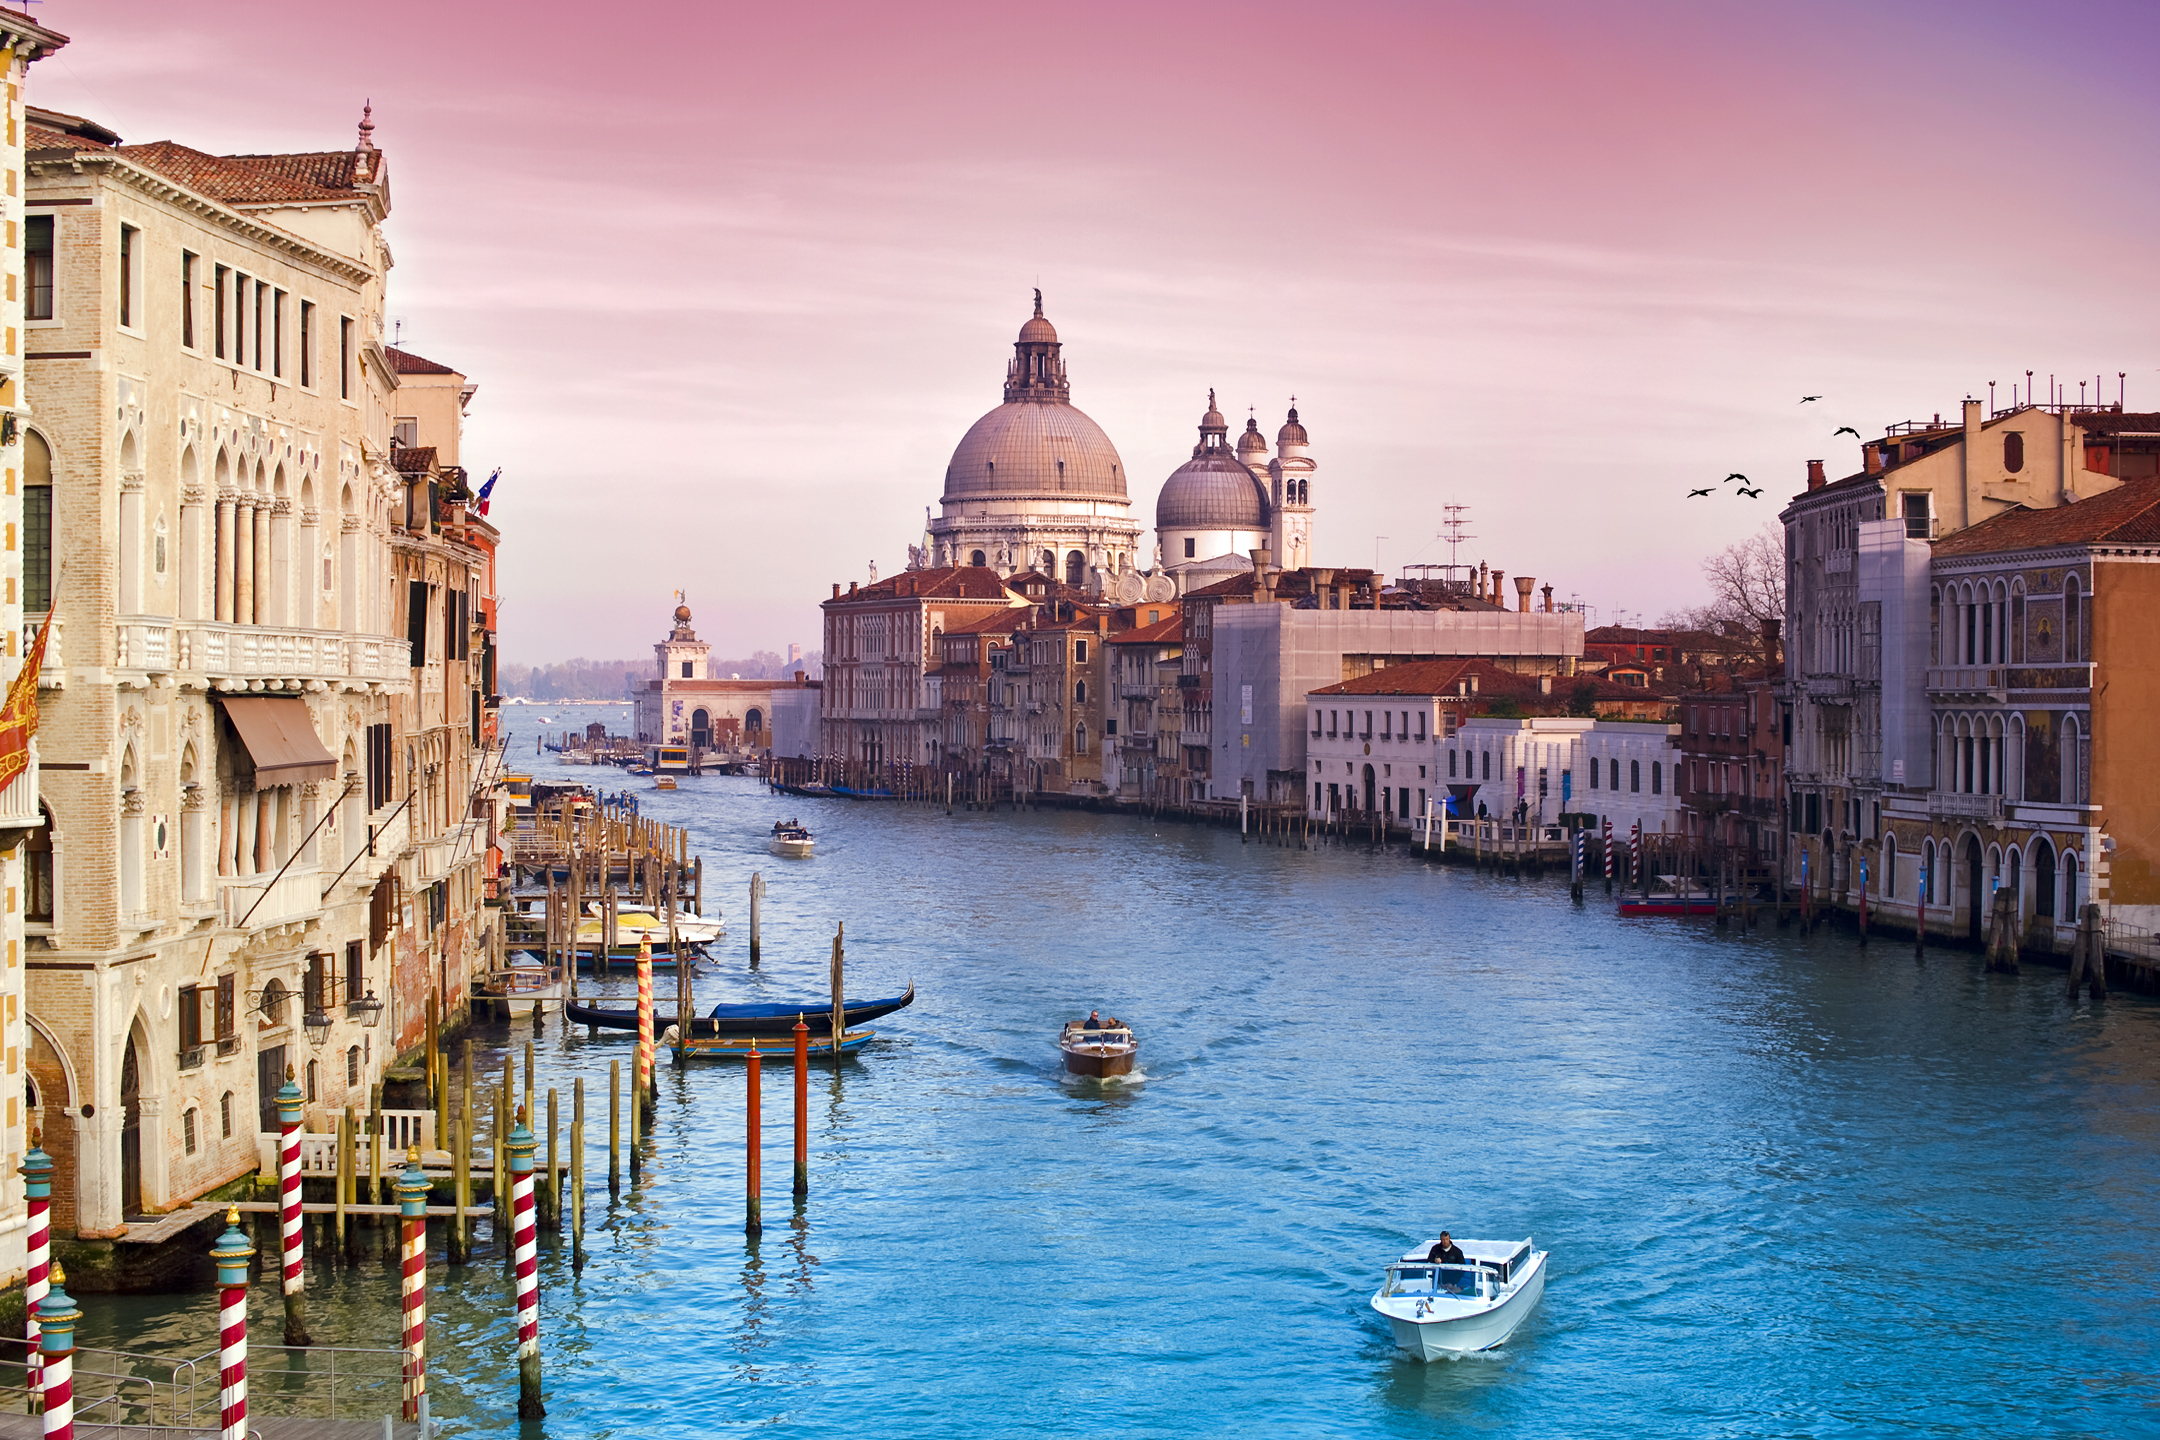 Скачать обои бесплатно Города, Италия, Венеция, Канал, Гондола, Сделано Человеком картинка на рабочий стол ПК